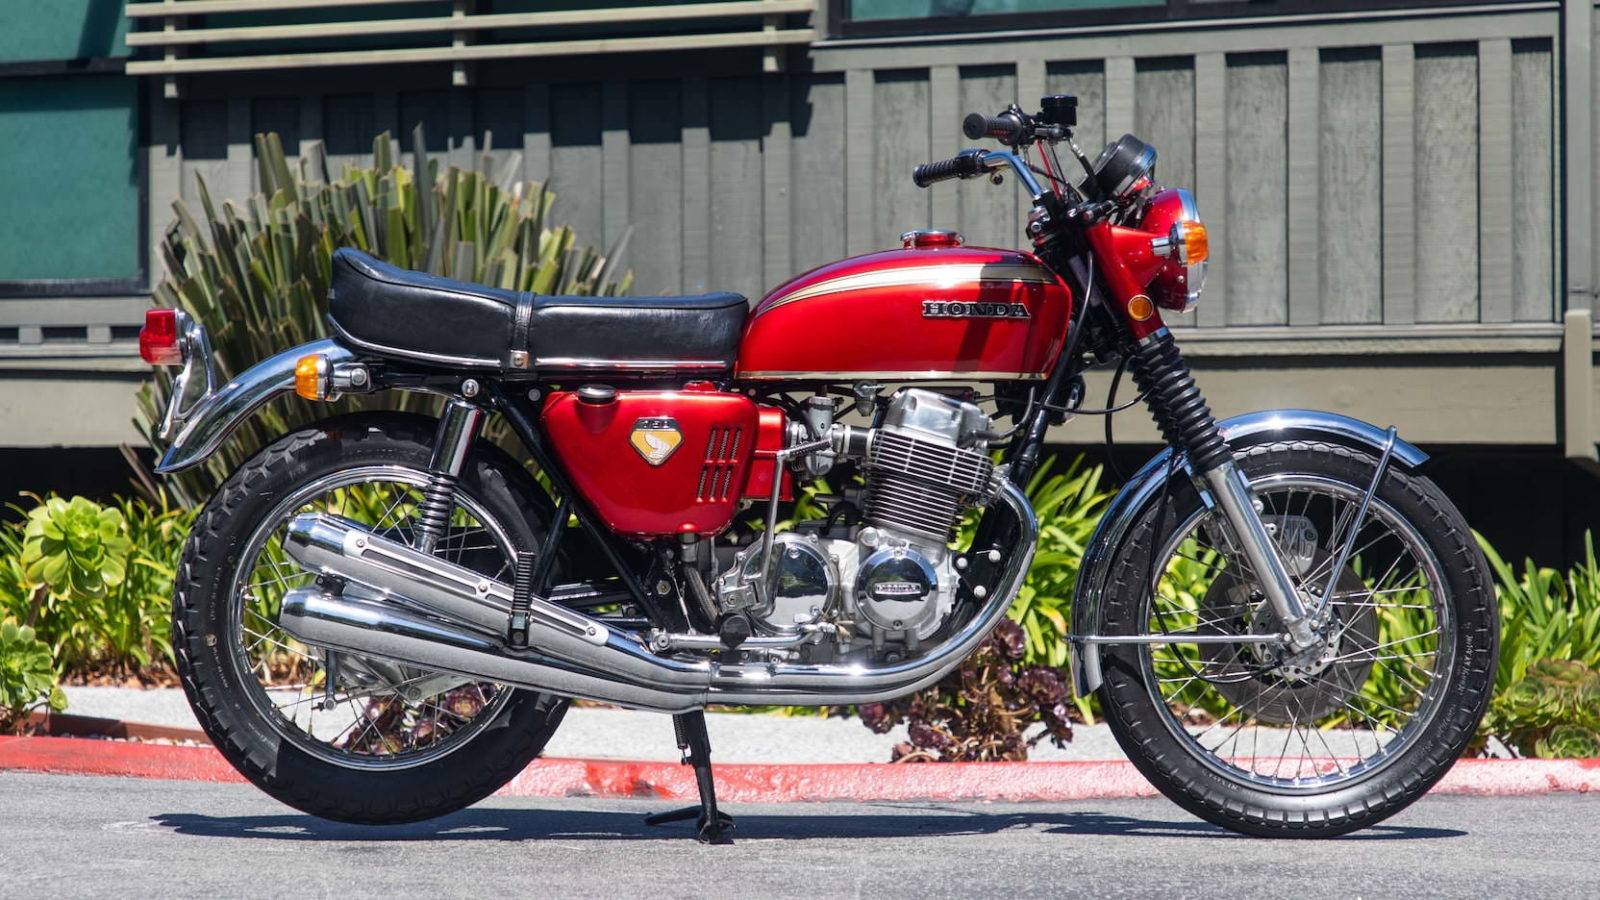 1969 Honda CB750 Four zobrazení profilu